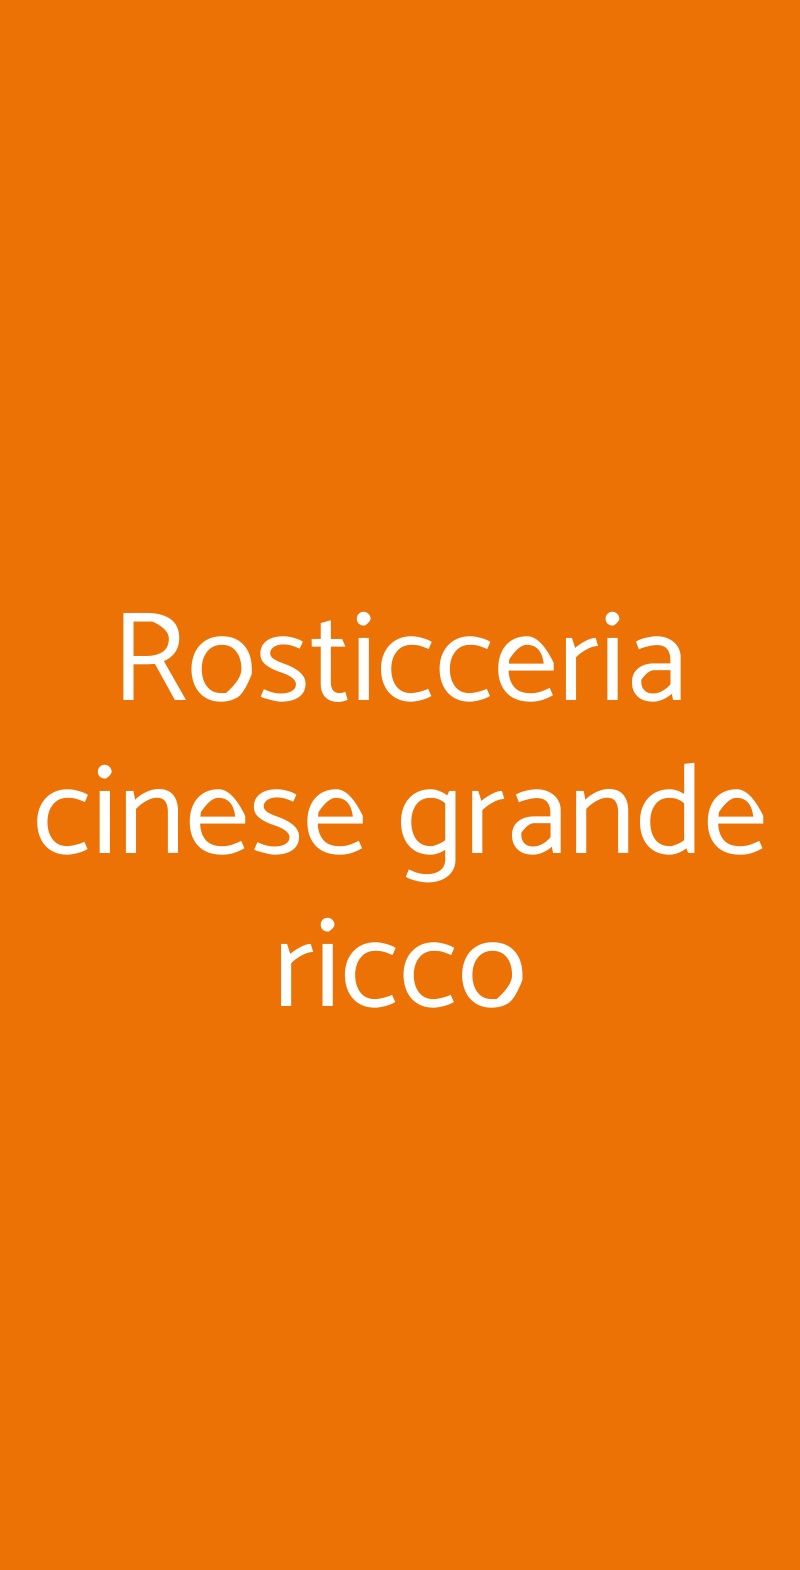 Rosticceria cinese grande ricco Firenze menù 1 pagina